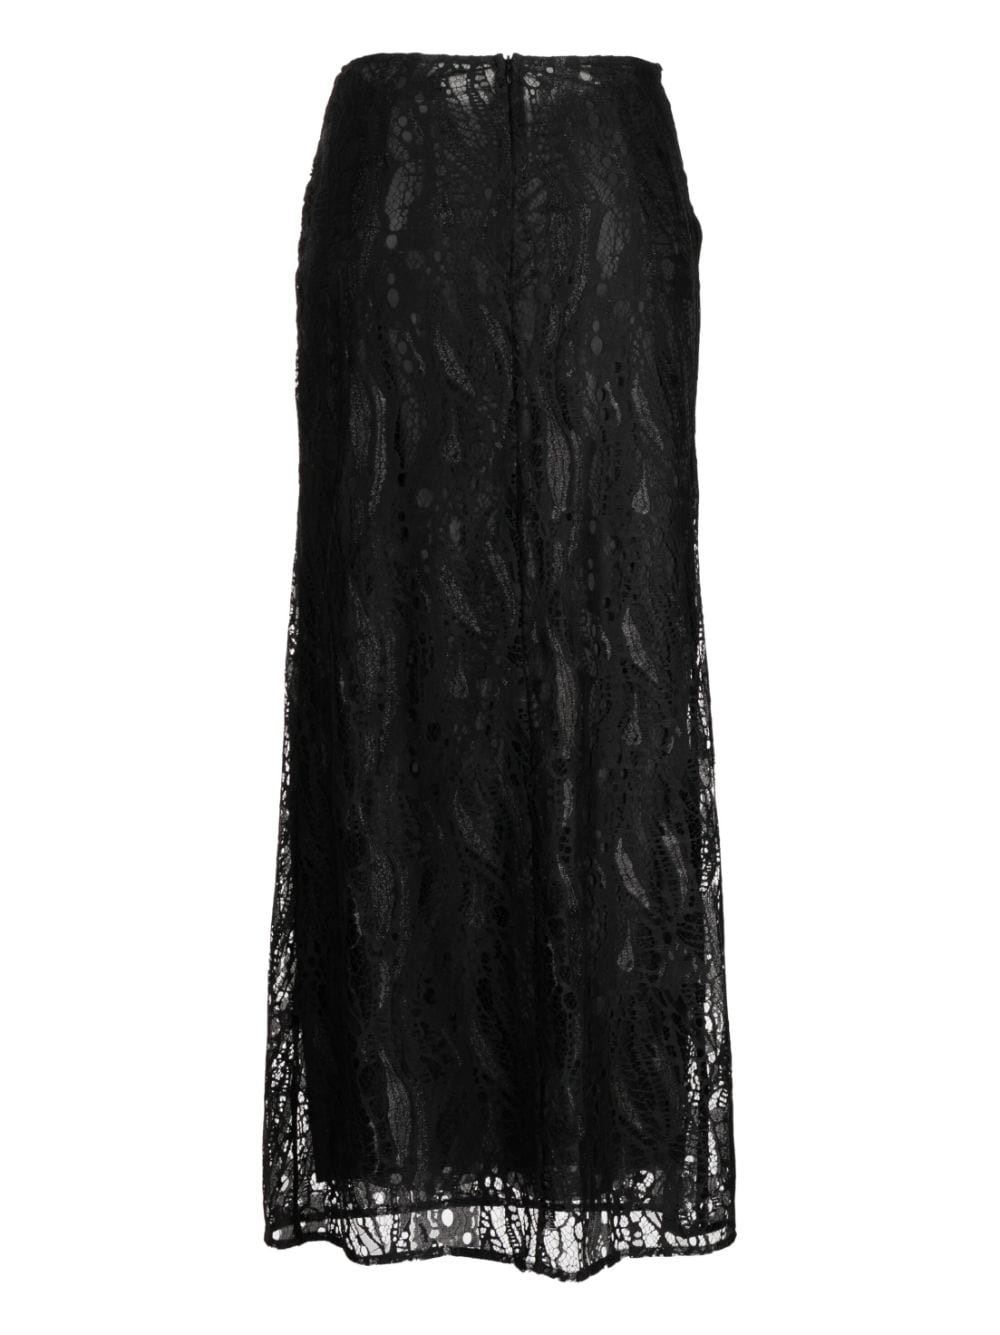 MANNING CARTELL Deco Esprit floral-lace skirt - Zwart